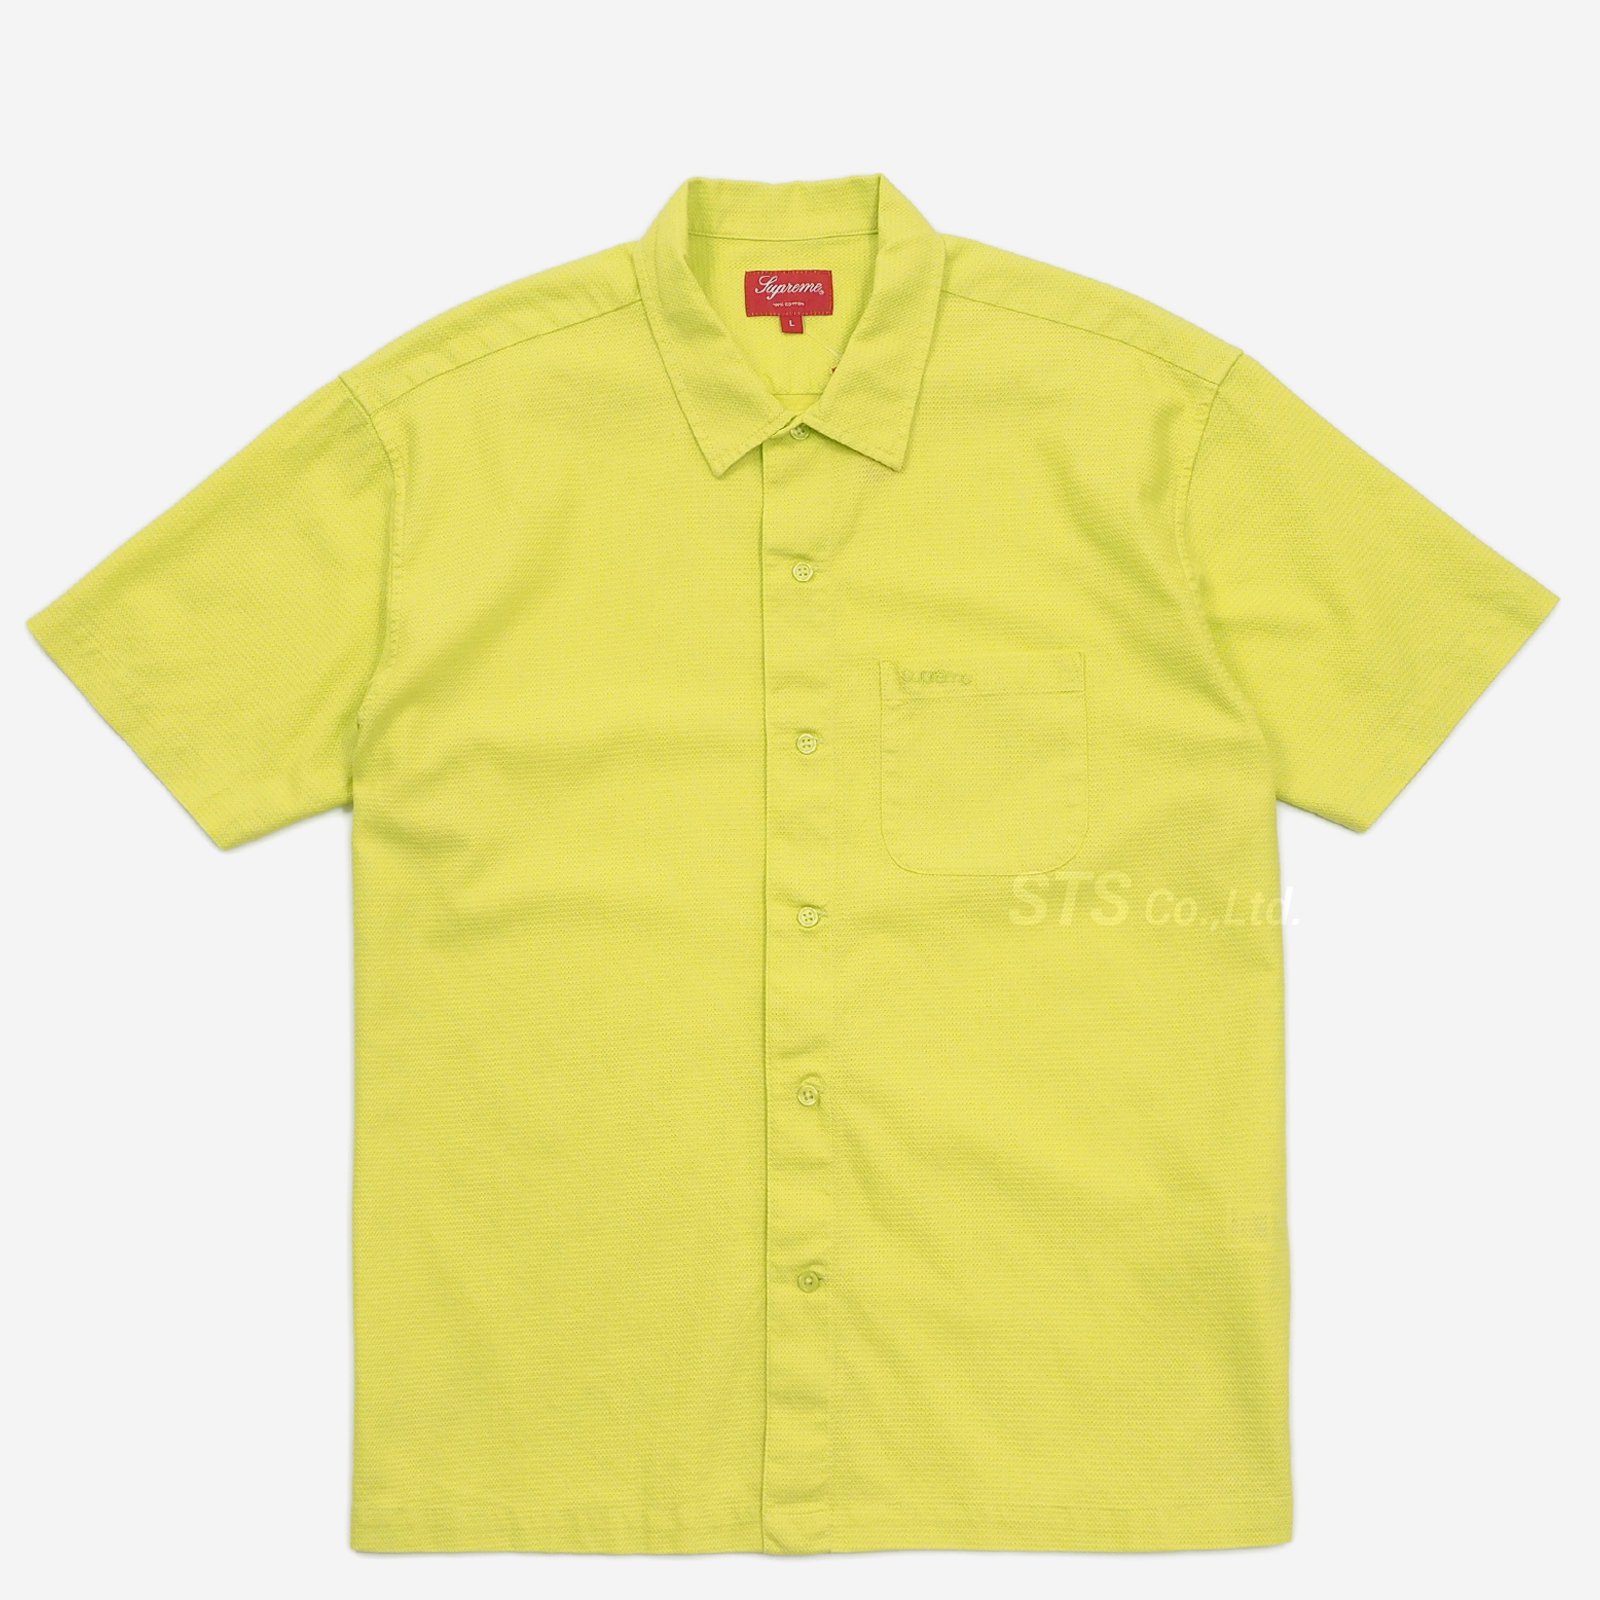 Supreme - Pinhole S/S Shirt - UG.SHAFT